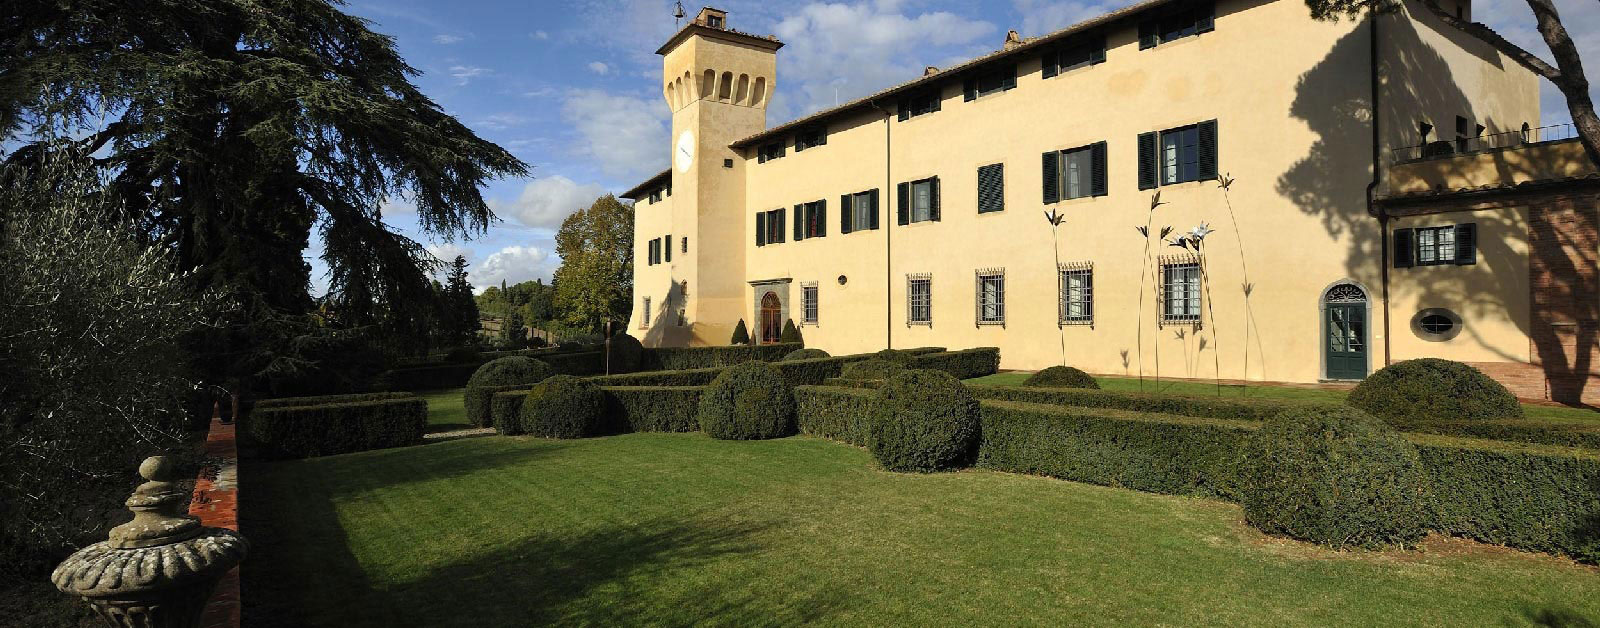 Walk the grounds Castello del Nero | EAT.PRAY.MOVE Yoga | Chianti, Italy